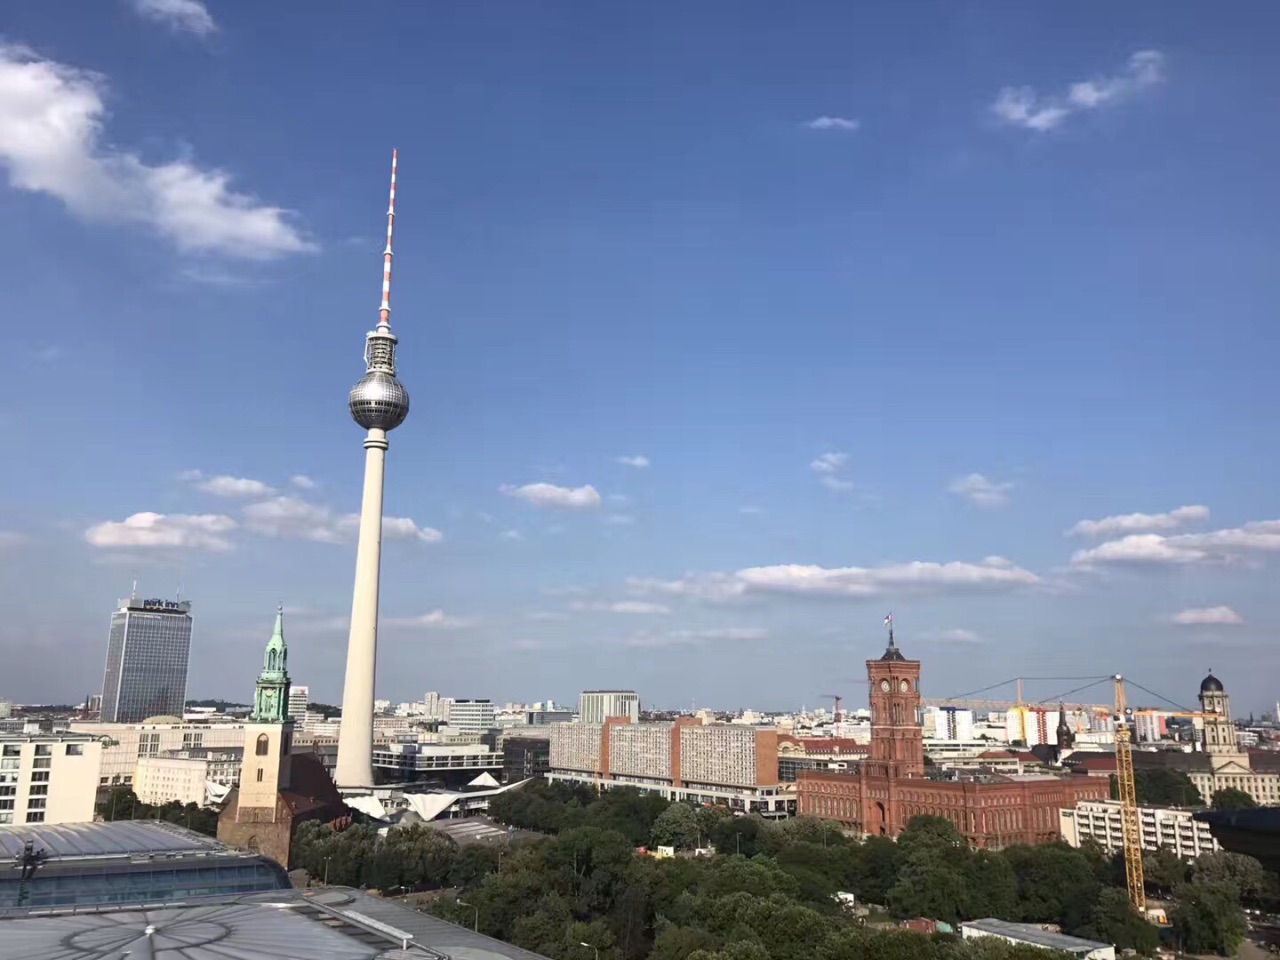 柏林旅游景点,柏林旅游景区,柏林旅游景点推荐-蚂蜂窝旅游指南